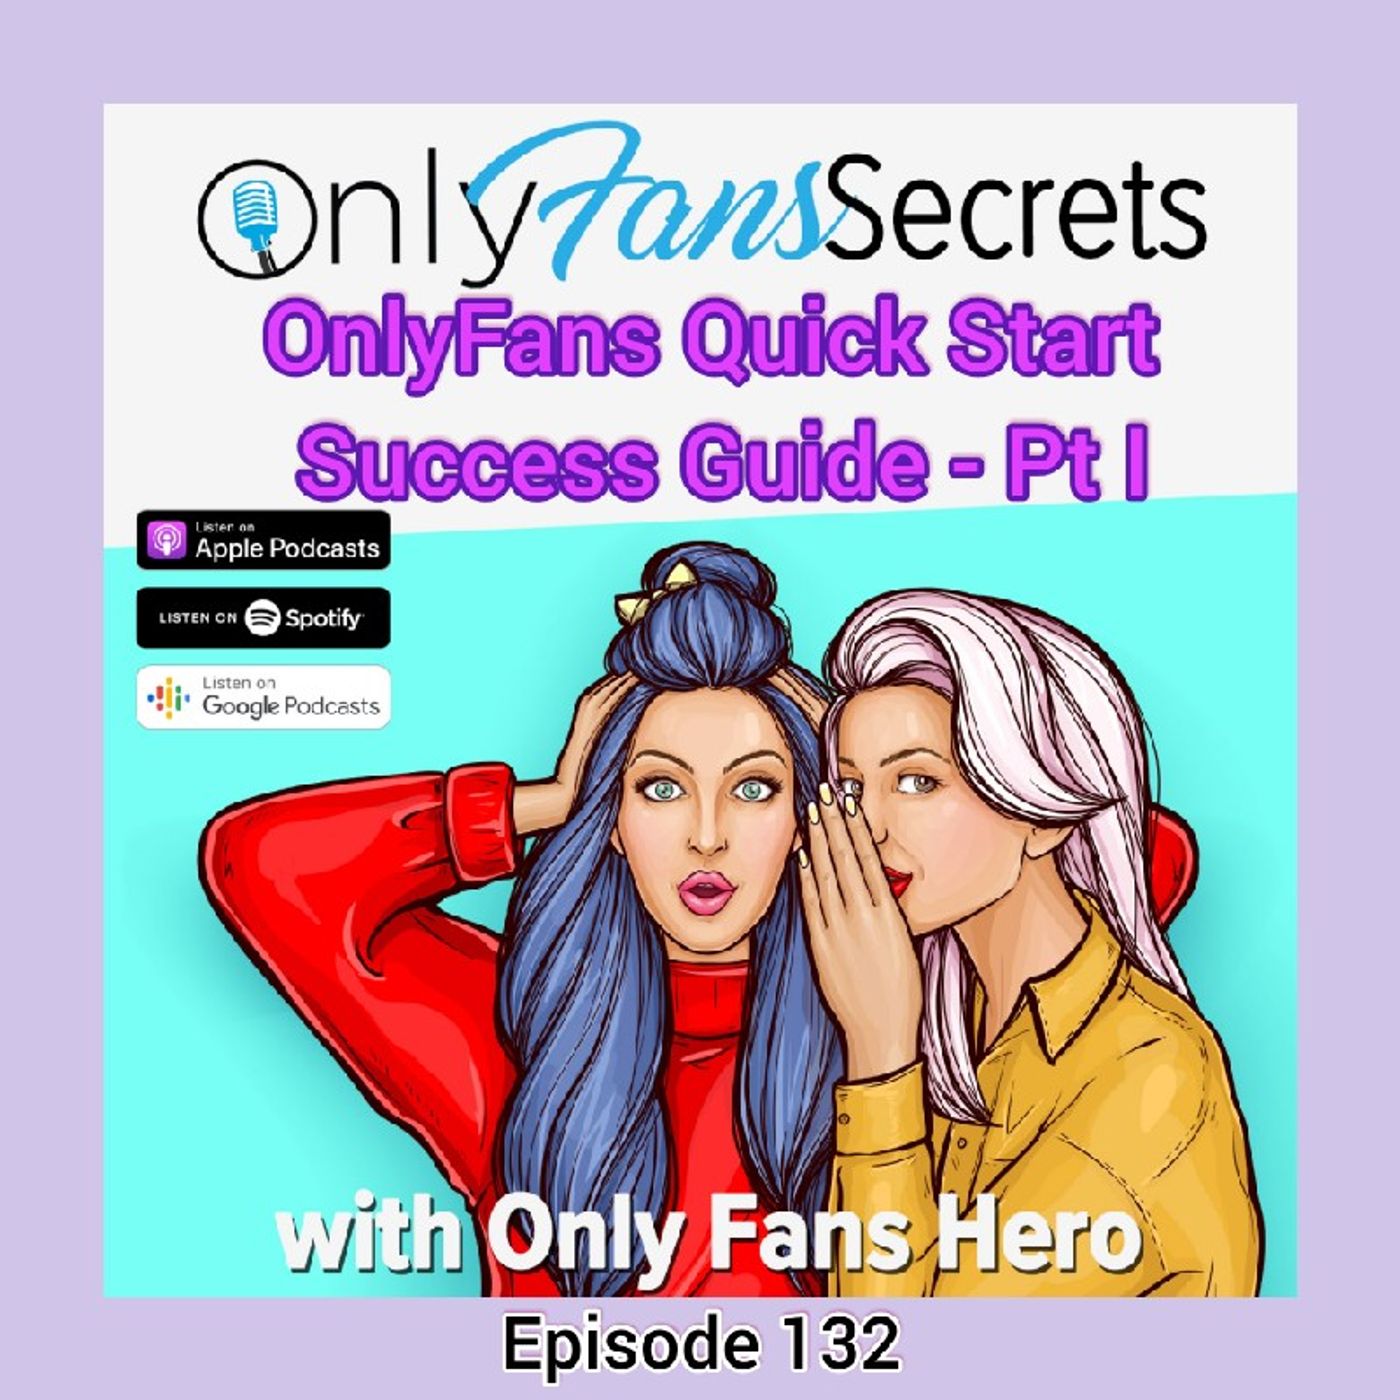 OnlyFans Quick Start Success Guide - Pt I